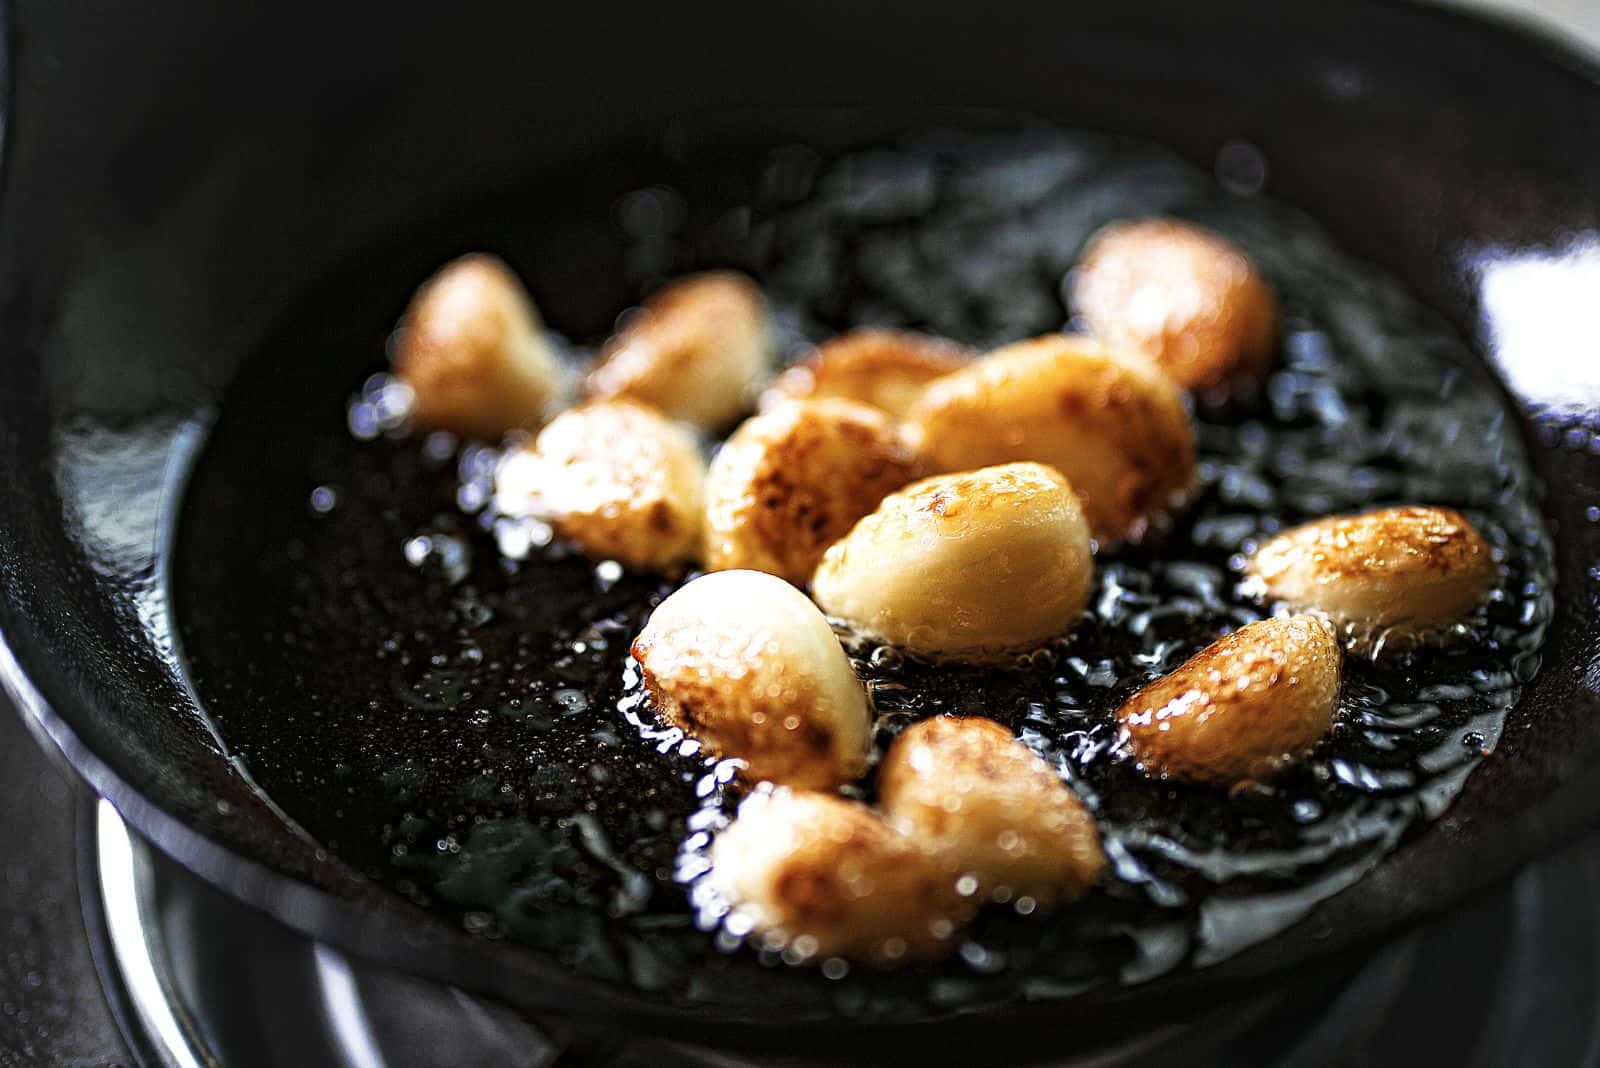 frying garlic